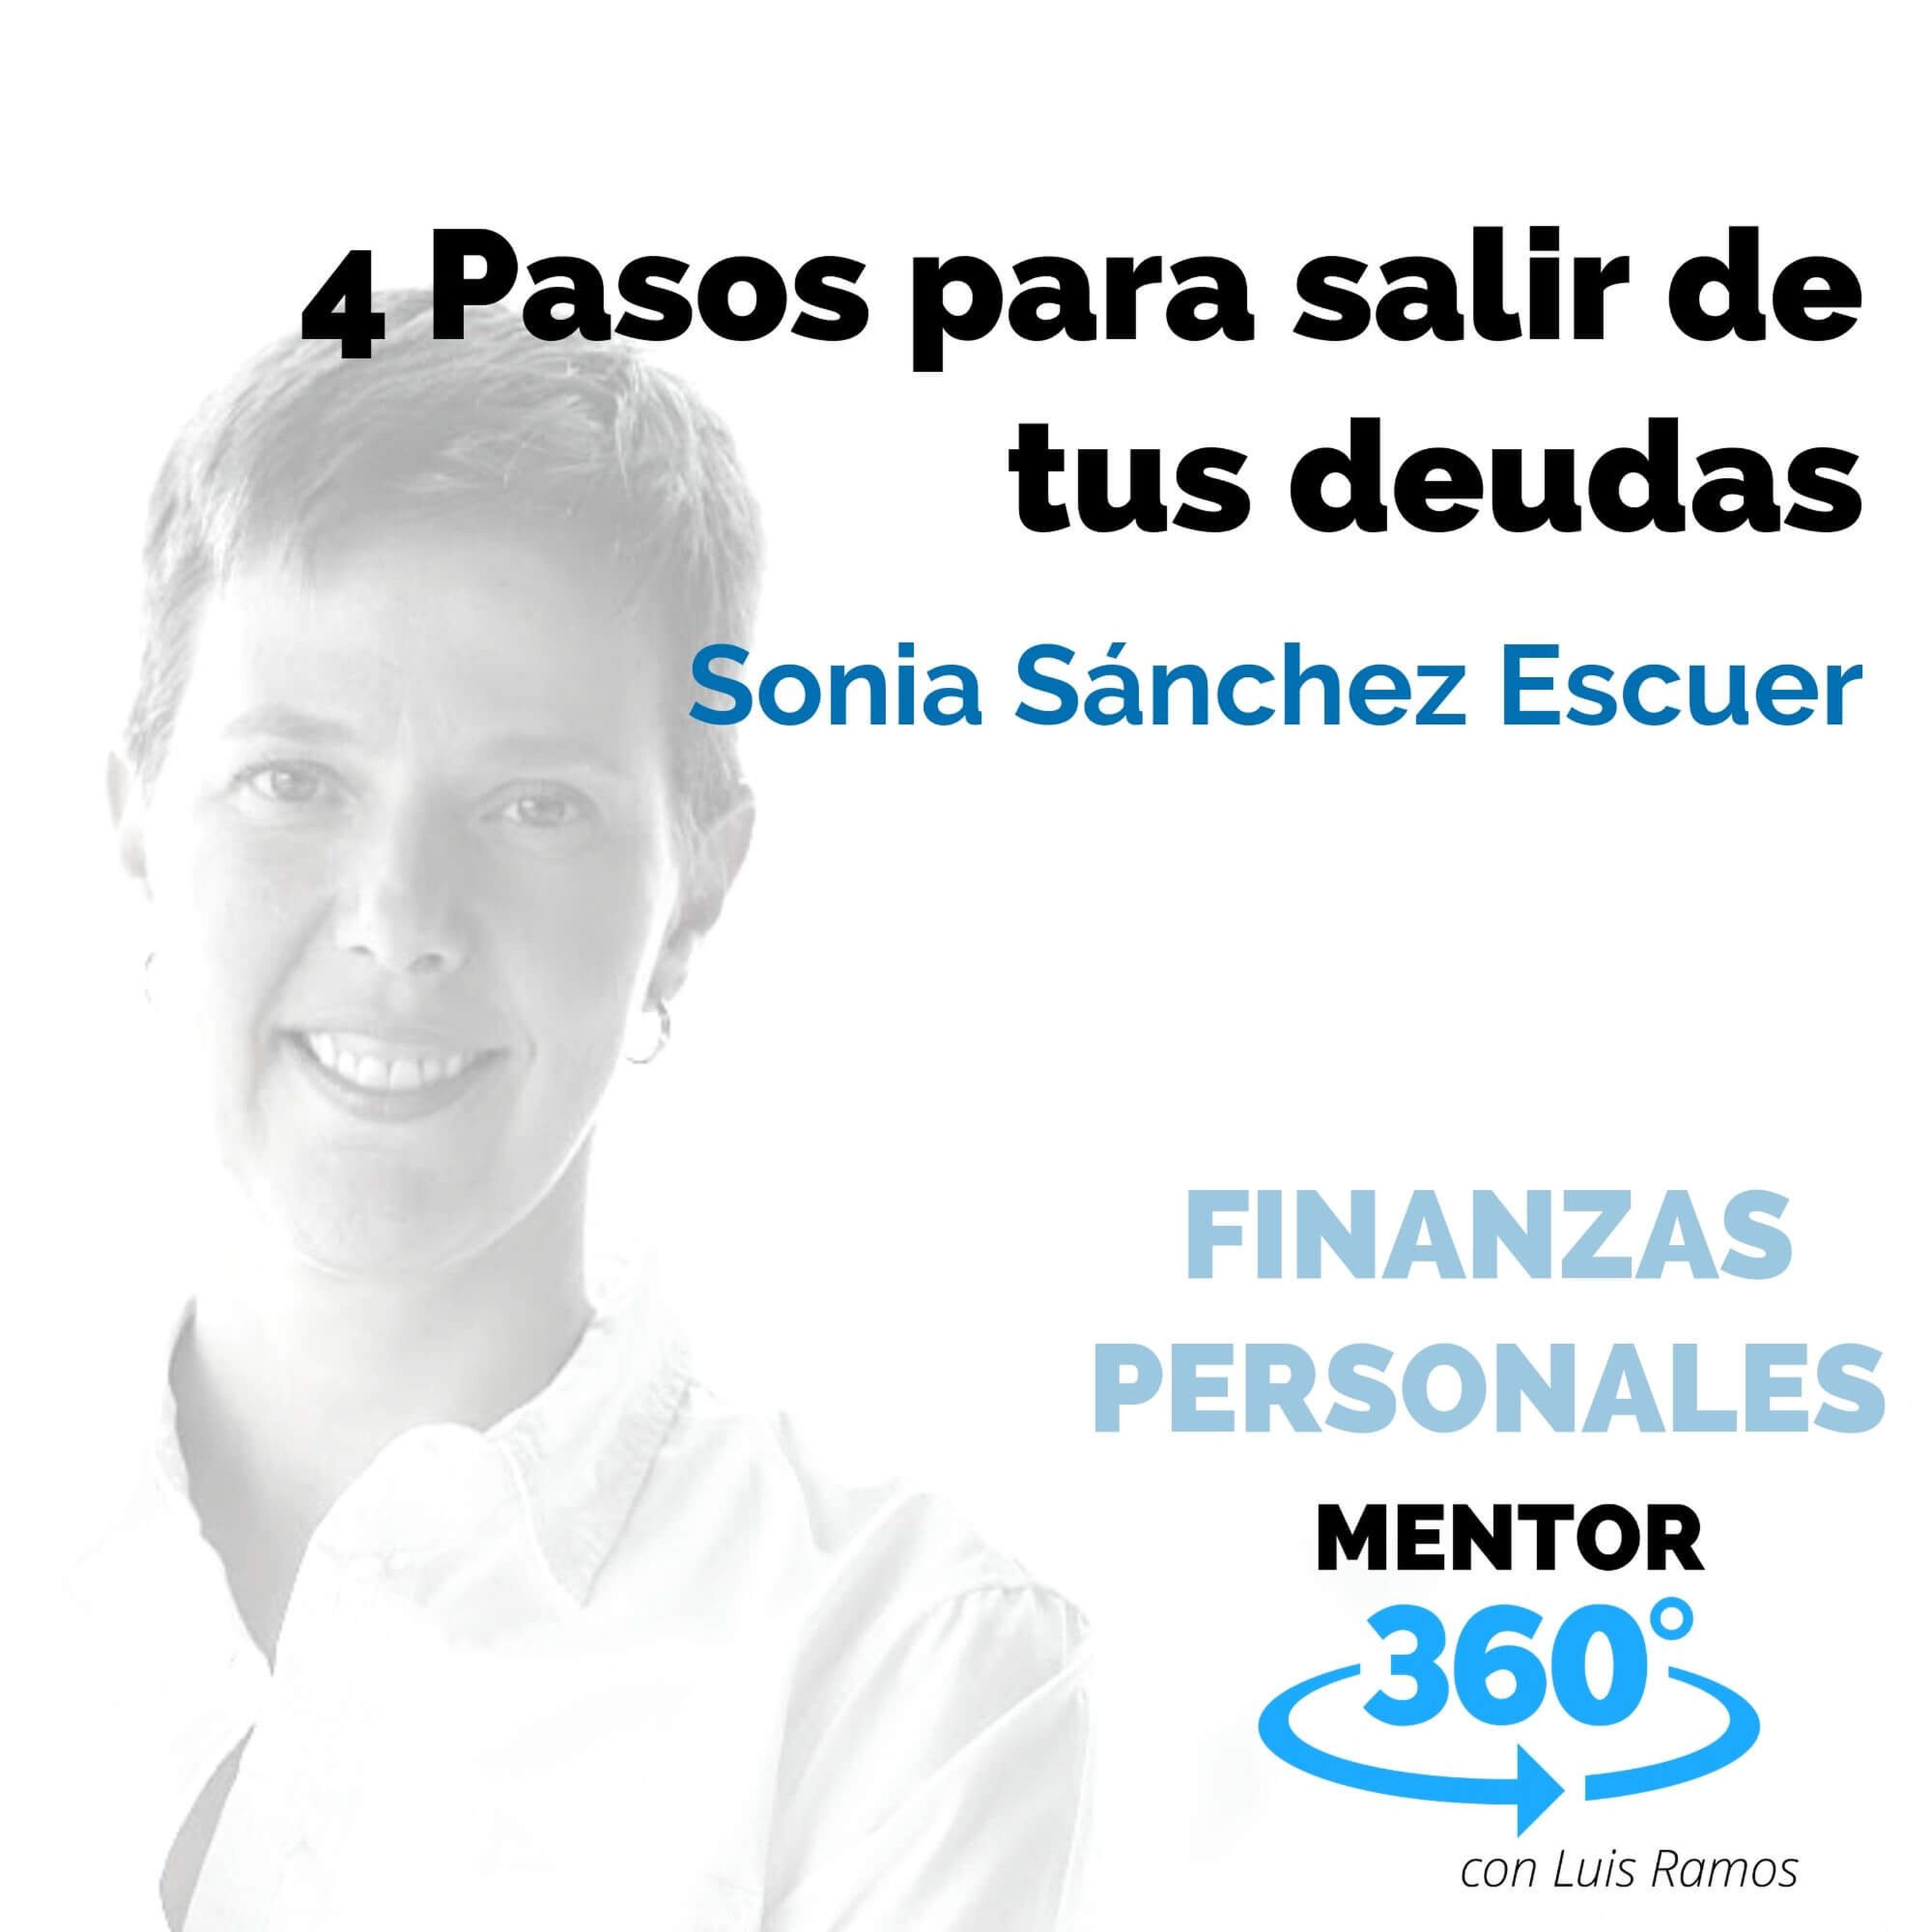 4 Pasos para salir de tus deudas, con Sonia Sánchez Escuer - FINANZAS